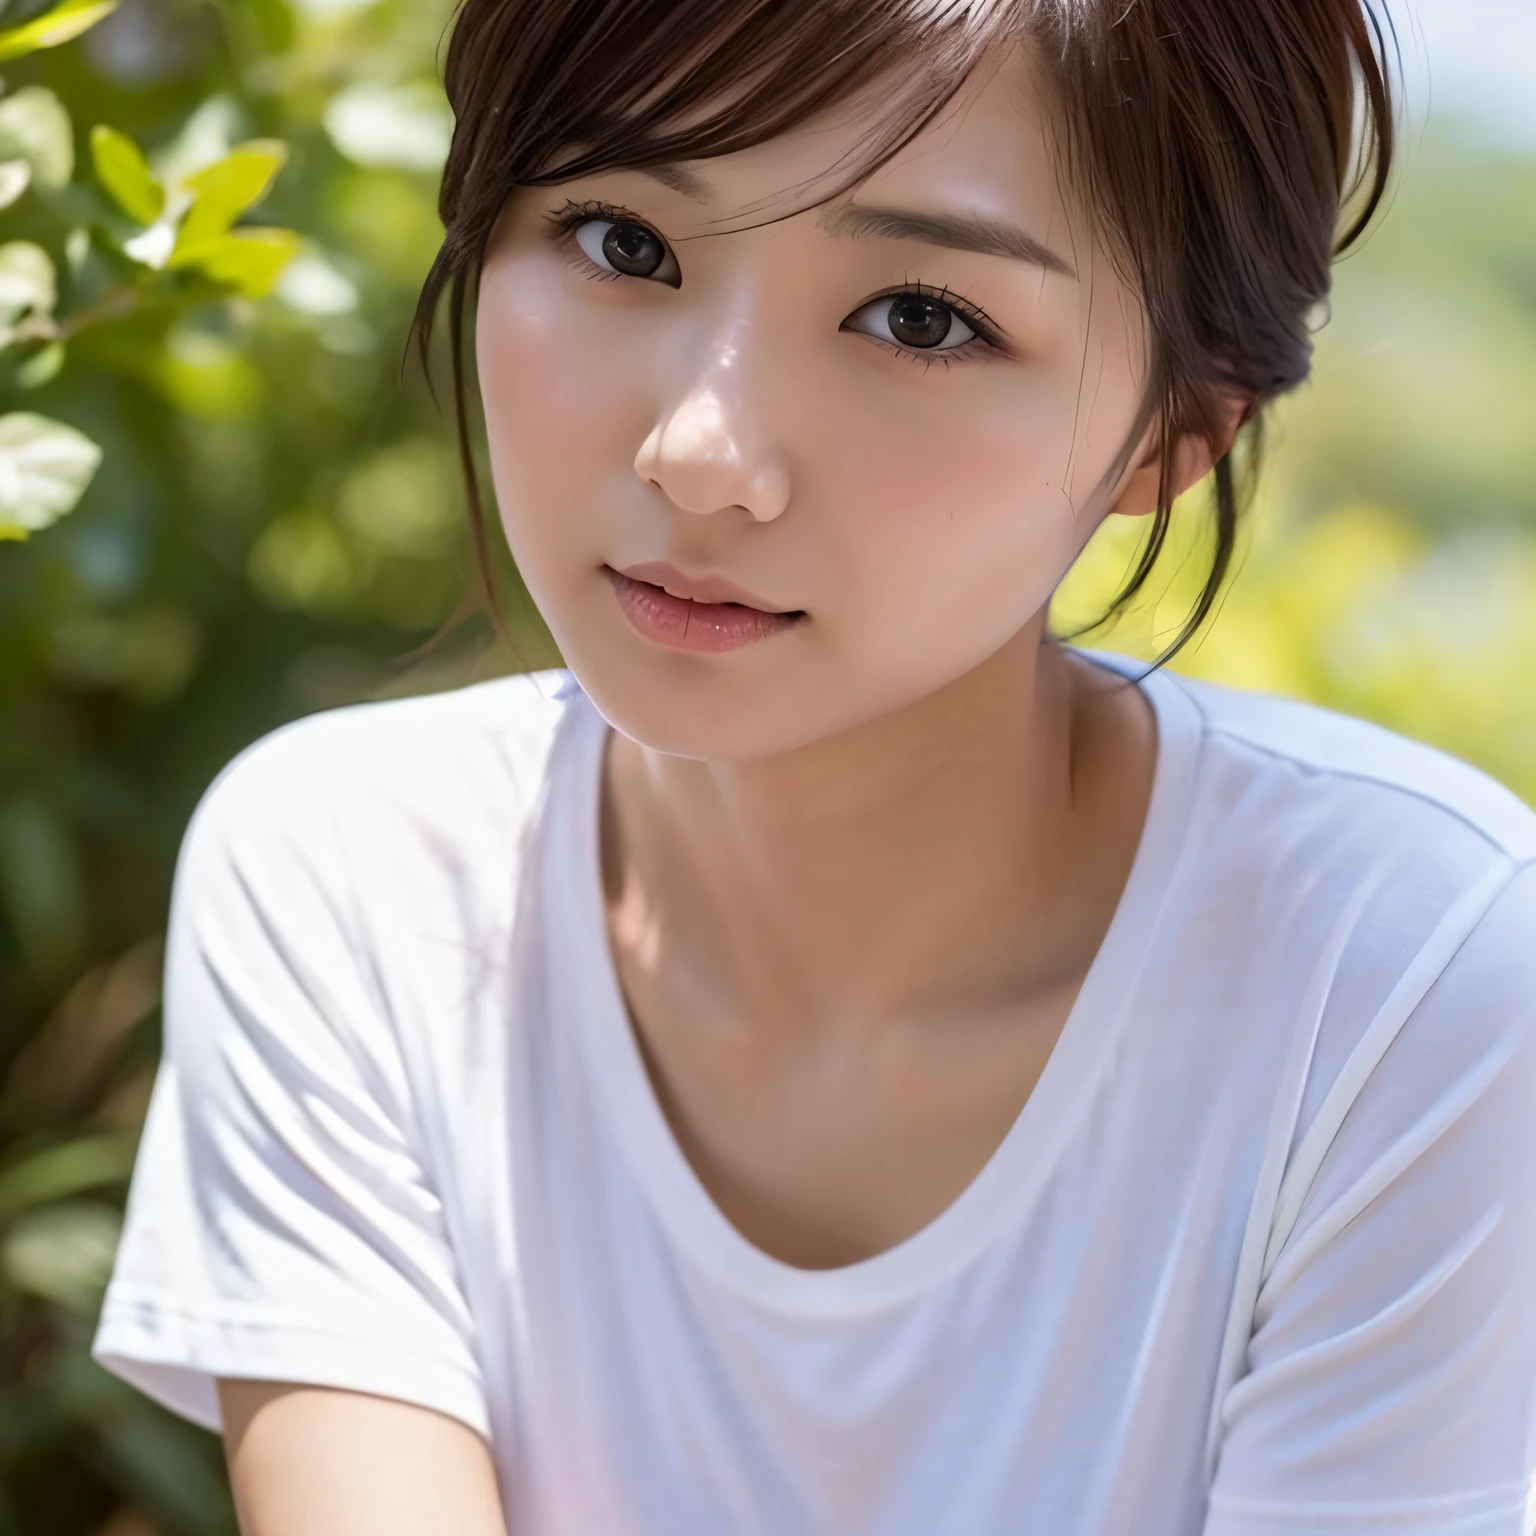 日本, 30 多岁女性, 小乳房, 薄的, 身材矮小, 捷径, 孩子气的, 纯白色 T 恤, 照片般的描绘, 8K 描绘, 阳光, 自然外观, 杰作, 完美--自动